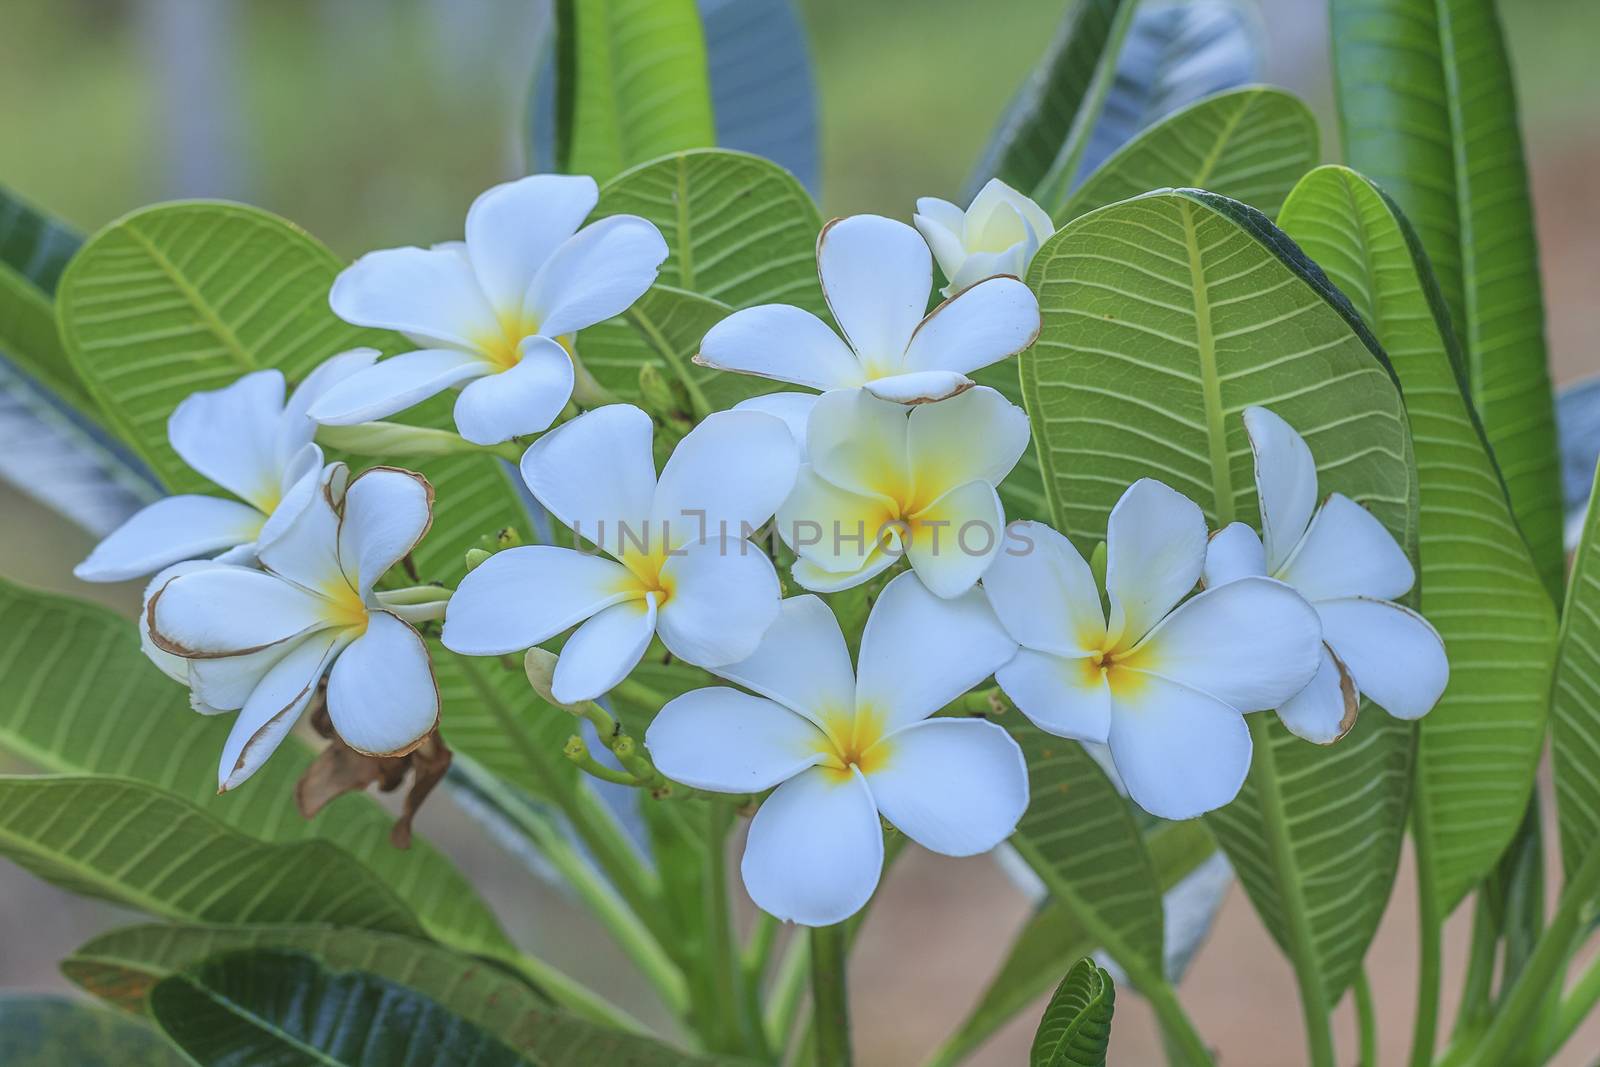 White frangipani flower in tropical garden